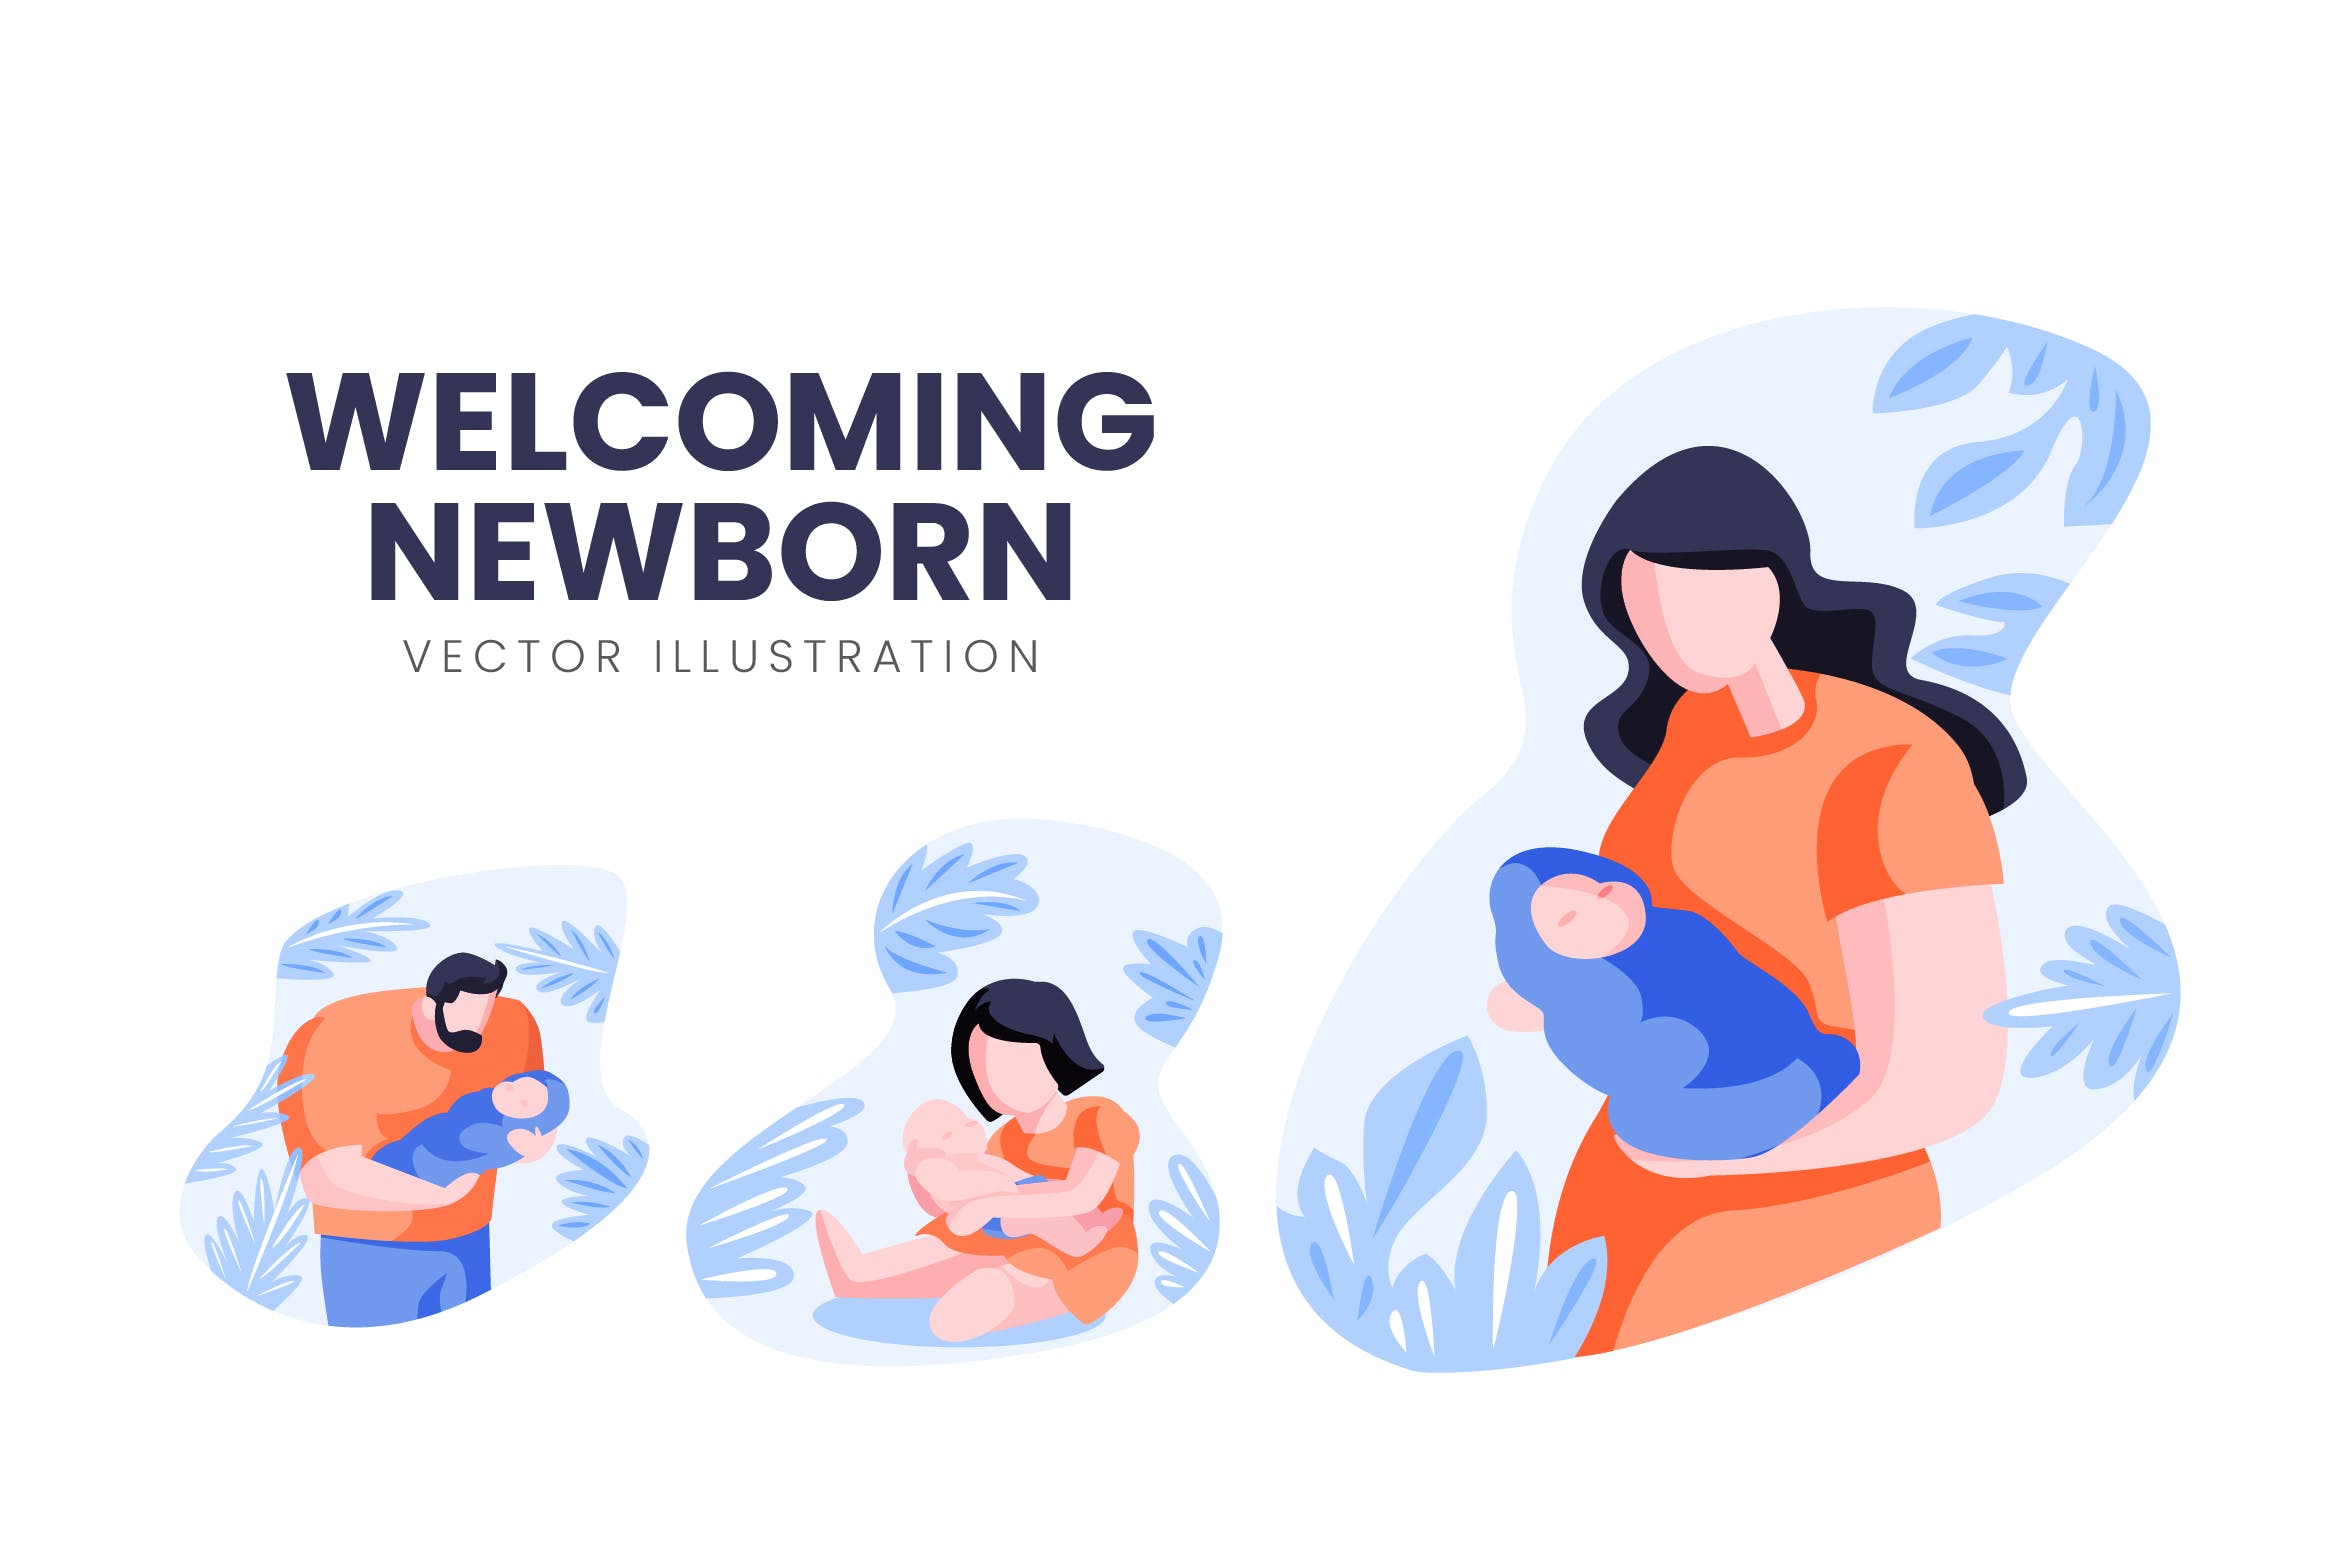 迎接降生新生儿人物形象素材库精选手绘插画矢量素材 Welcoming Newborn Vector Character Set插图